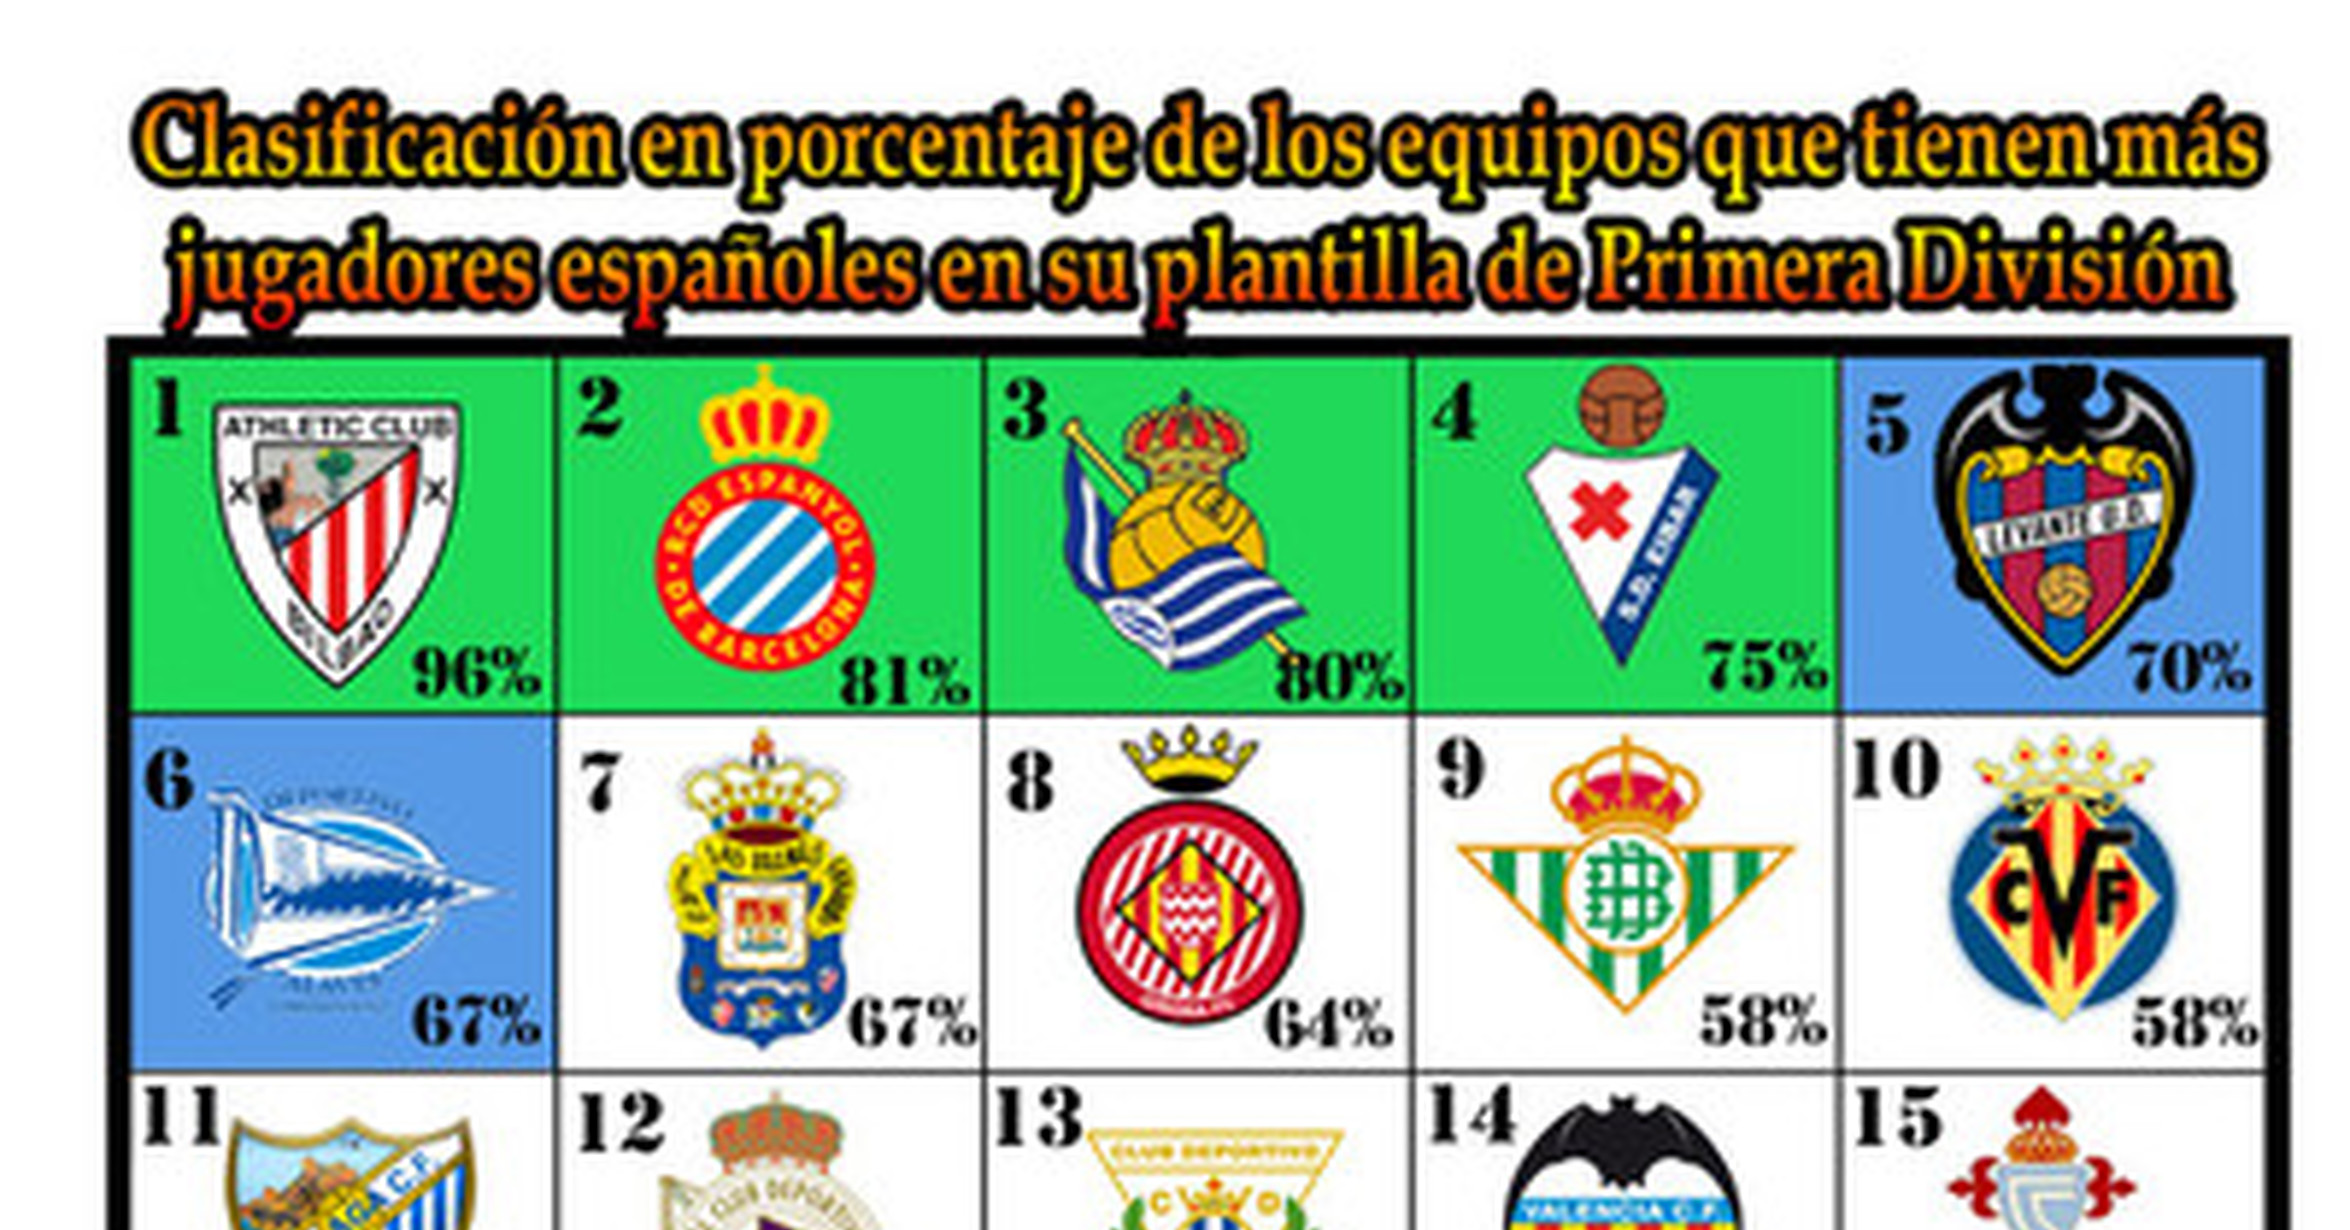 en porcentaje de jugadores españoles en equipos de Primera